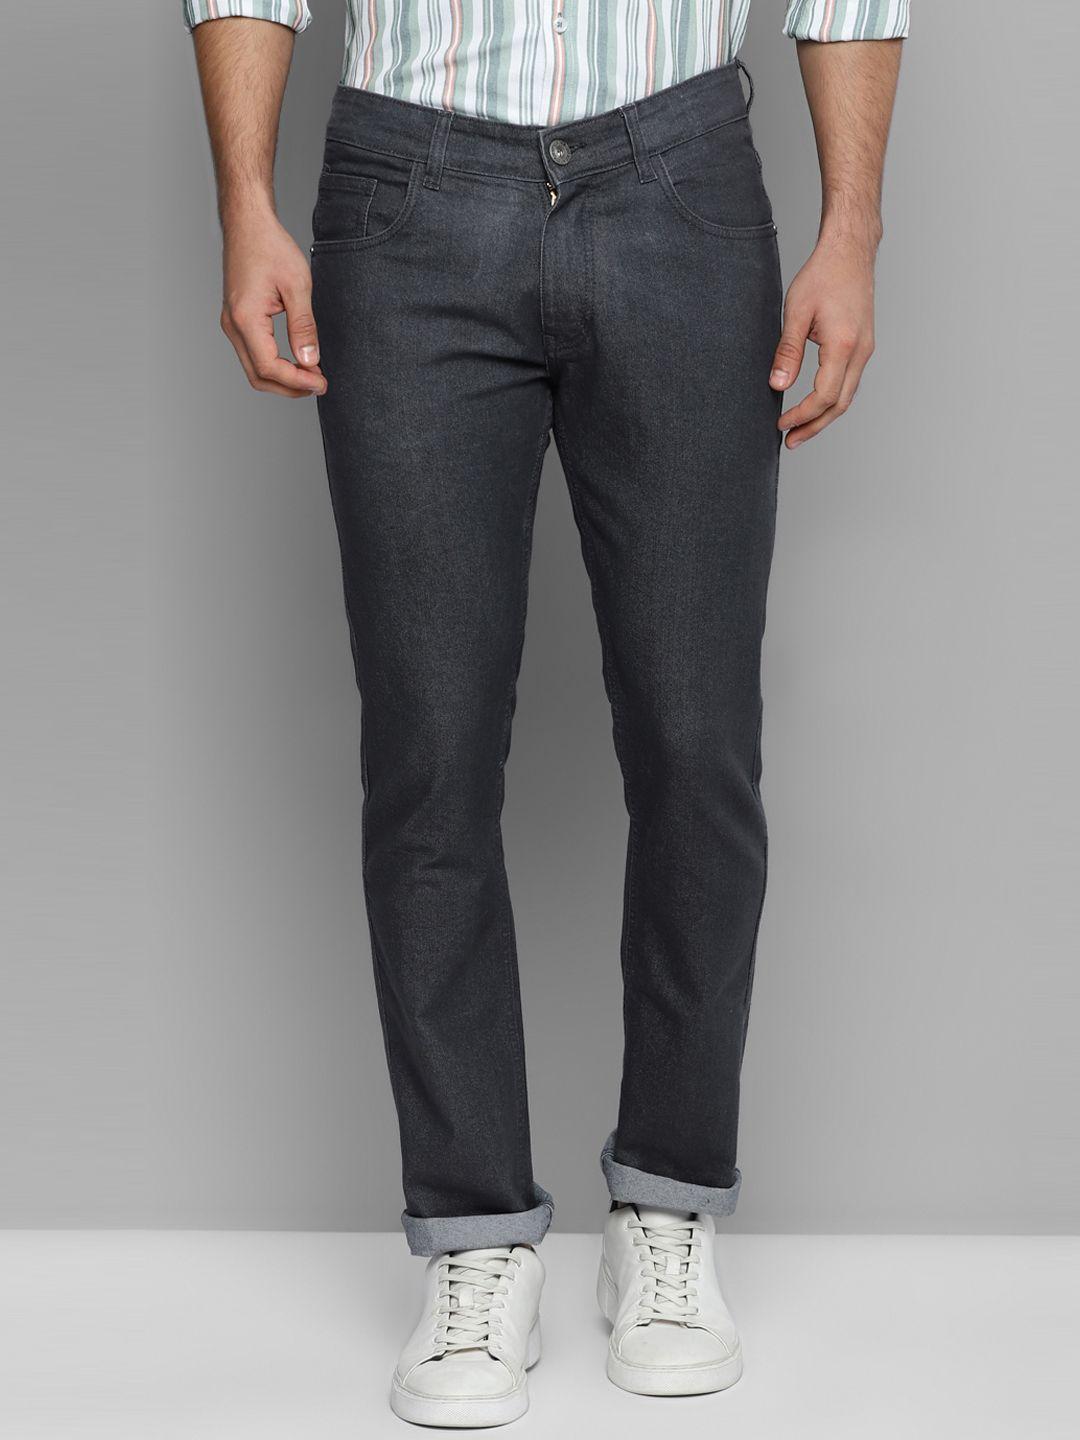 allen-cooper-men-urban-slim-fit-stretchable-cotton-jeans